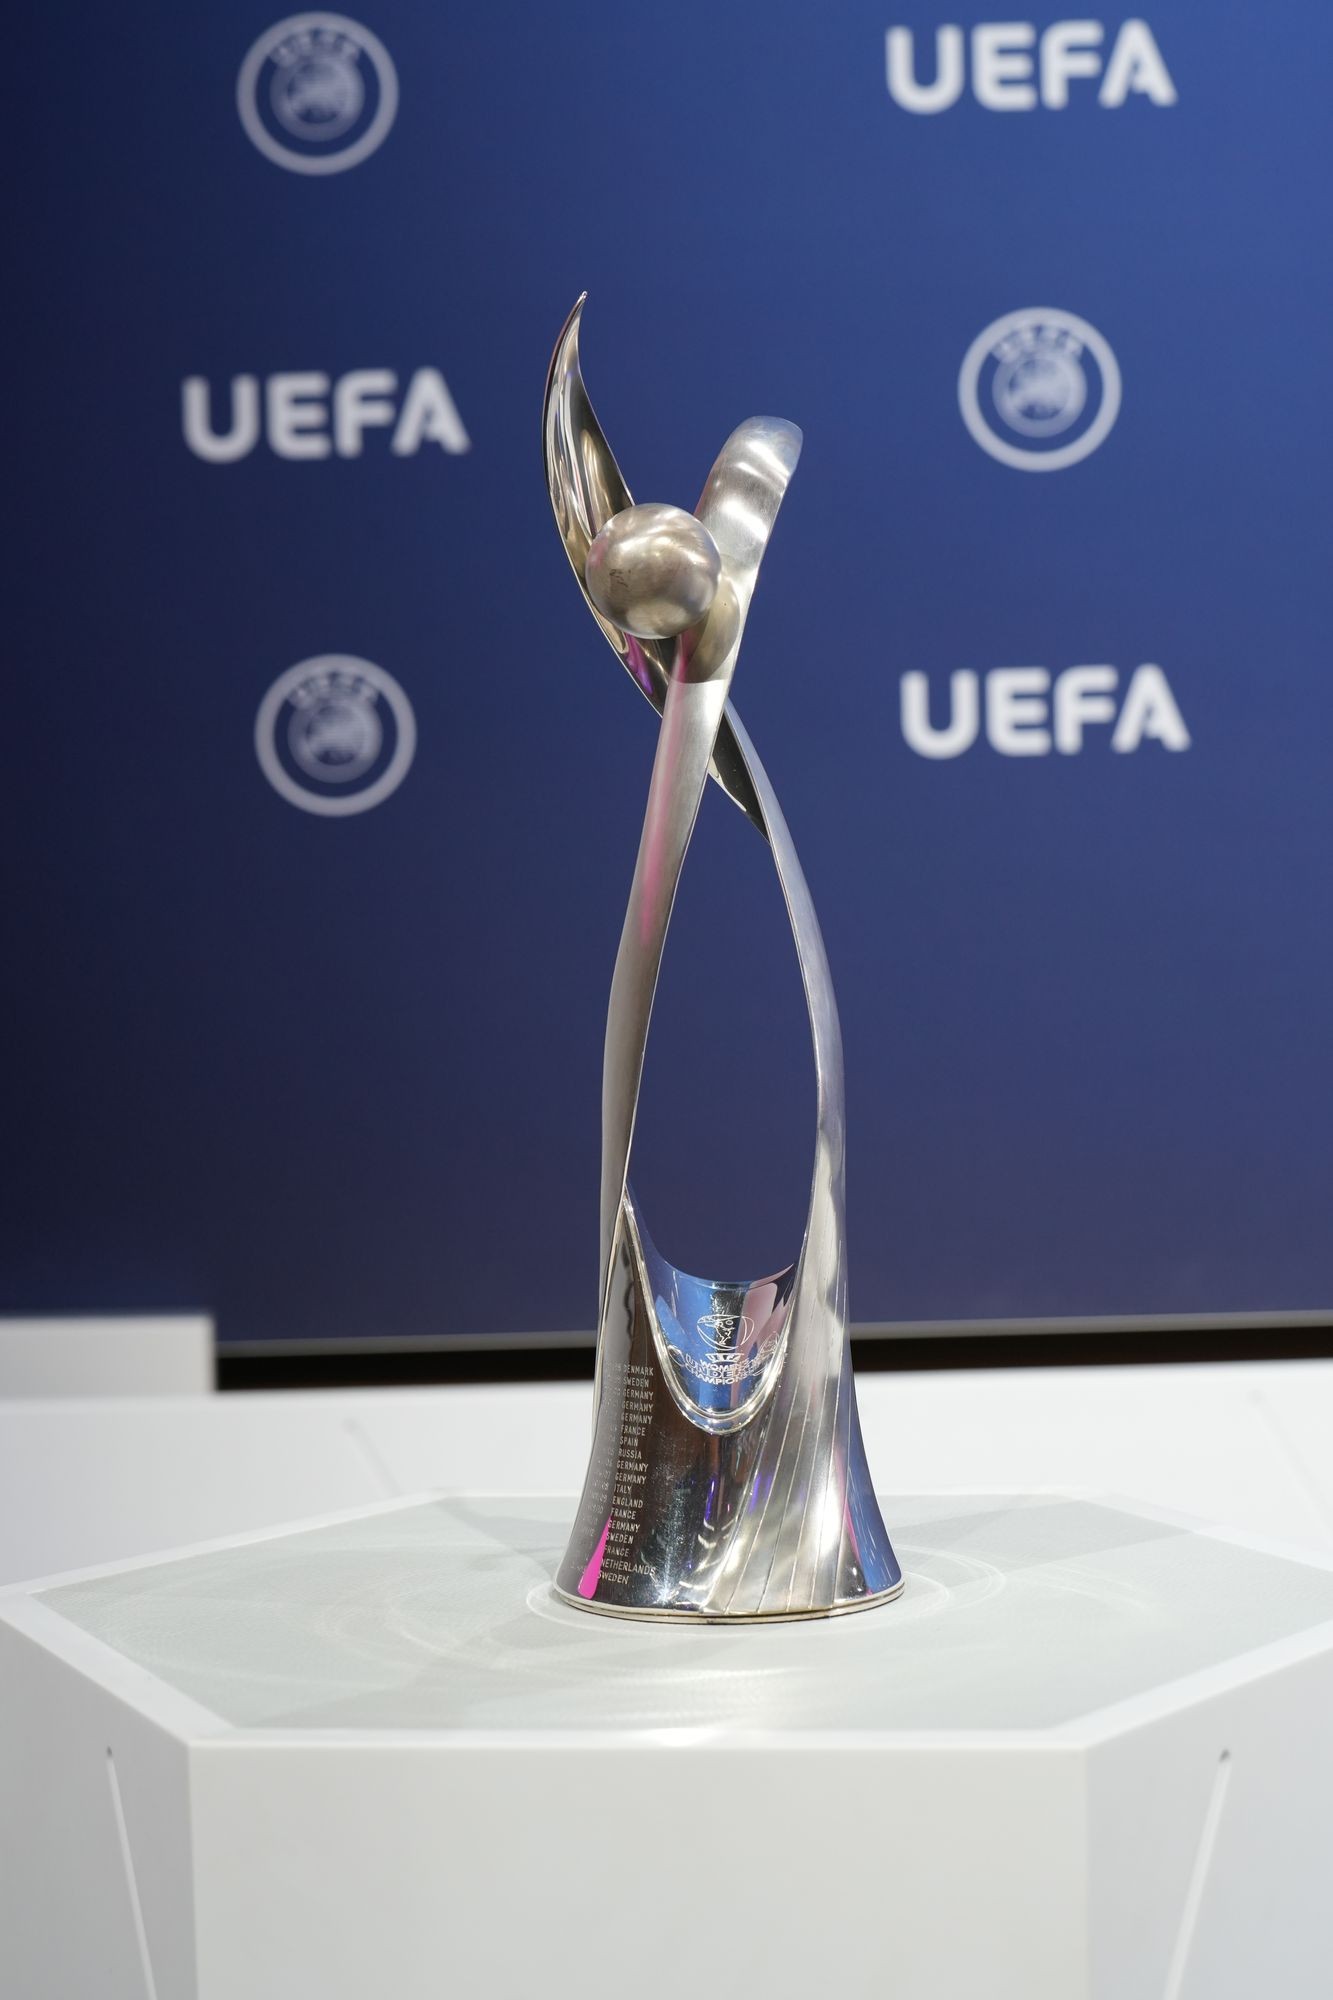 Táto trofej je určená pre víťazky majstrovstiev Európy do 19 rokov.